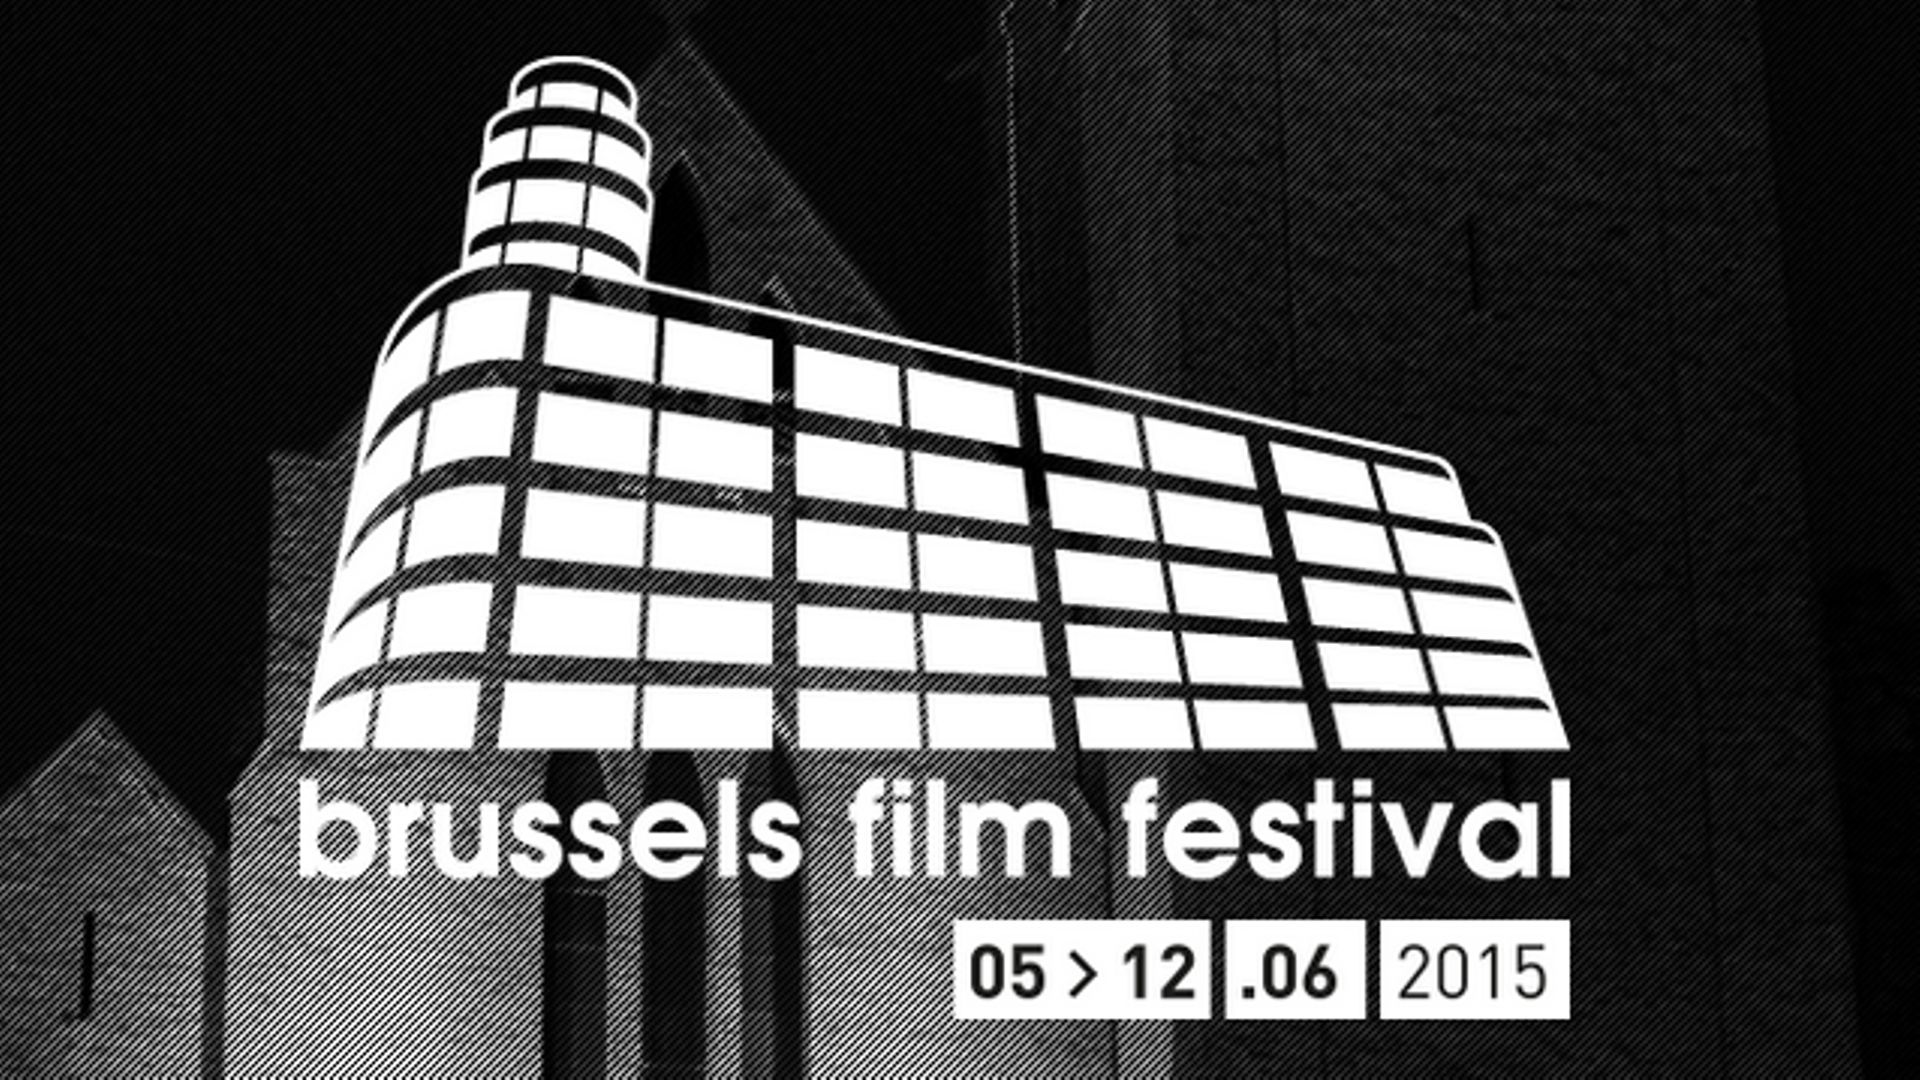 Le Brussels Film Festival aura lieu du 5 au 12 juin prochains